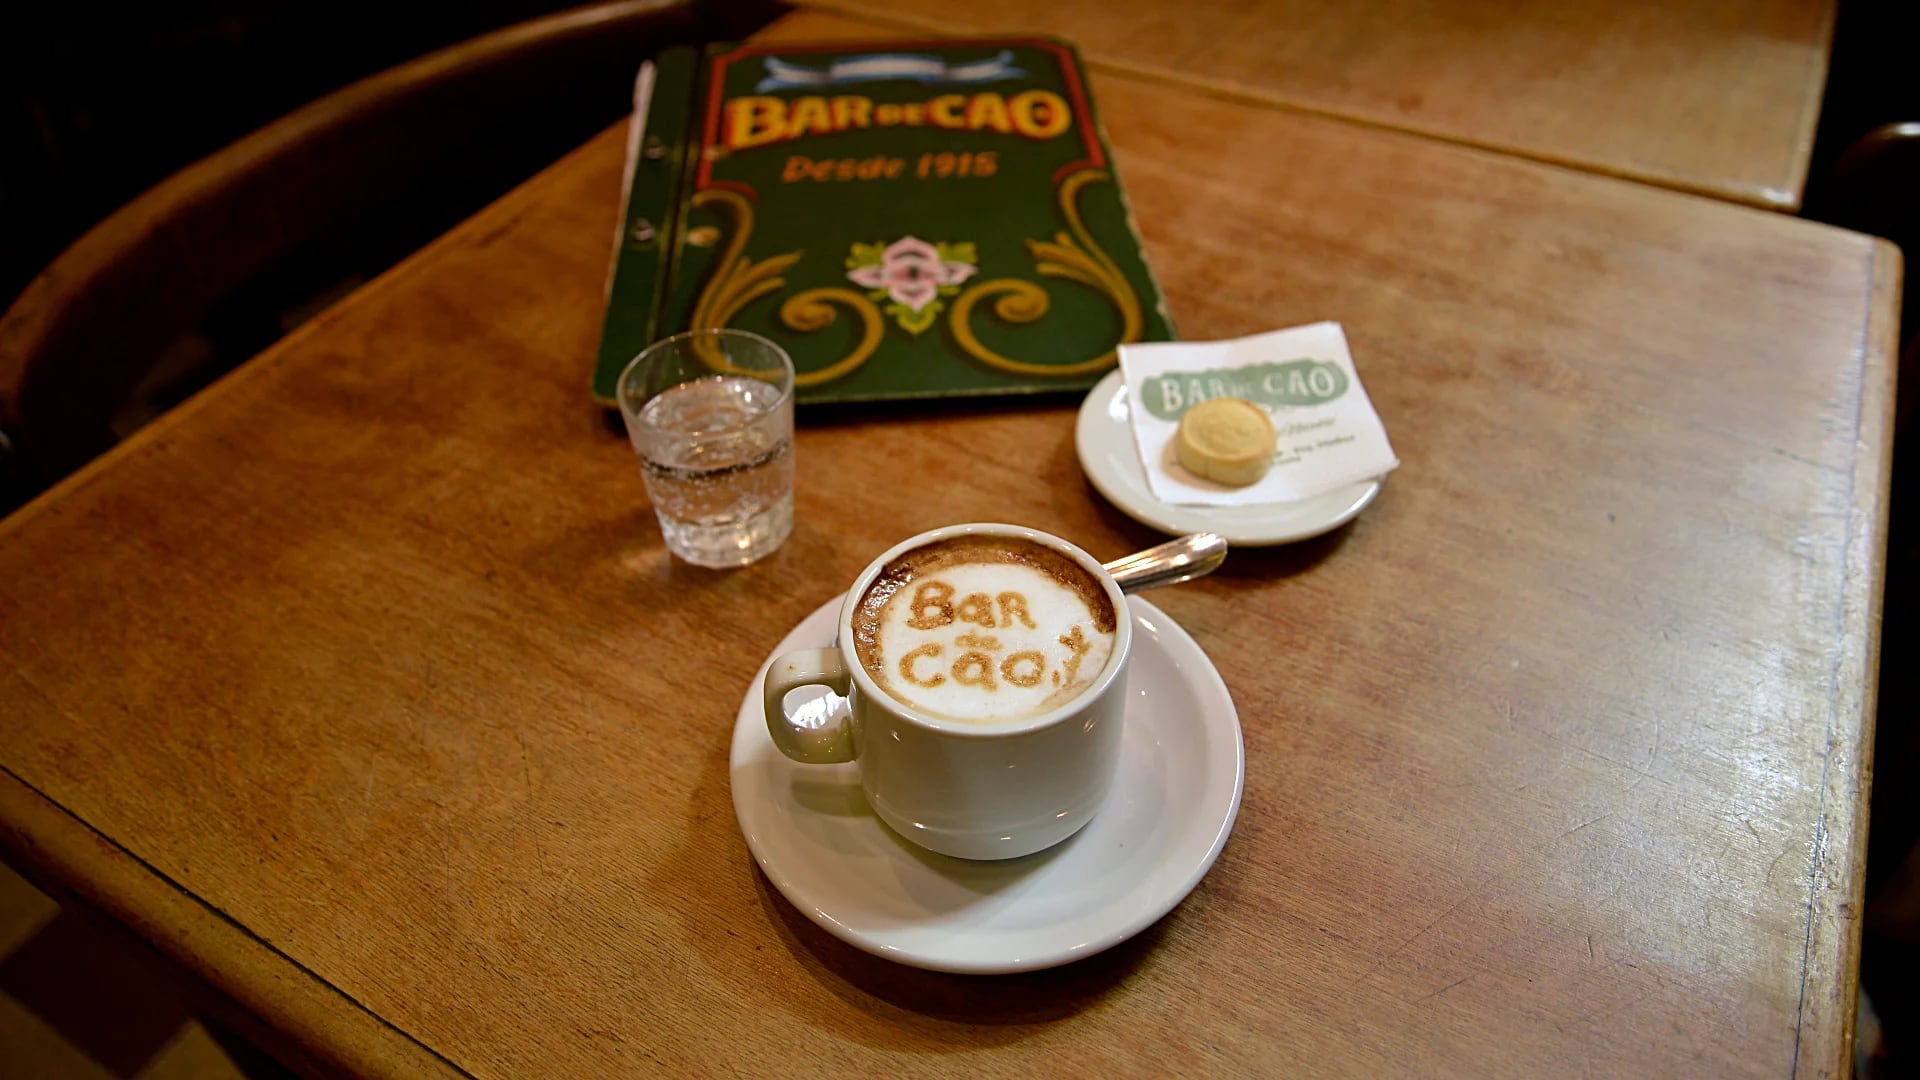 Para Infobae, realizaron un latte art con el logotipo del bar "Bar de Cao"  sobre el café 